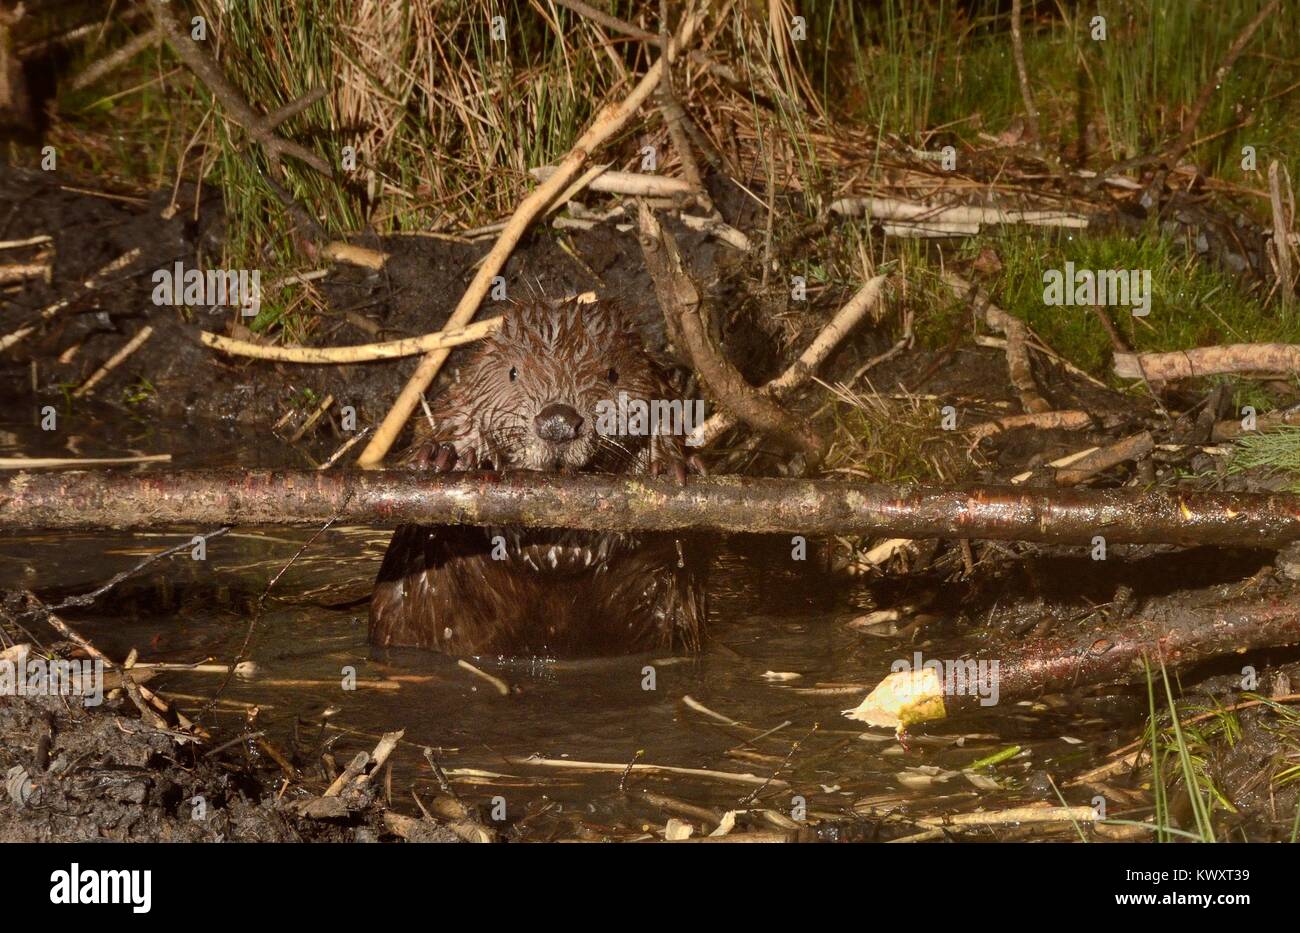 Le castor d'Eurasie (Castor fiber) rongeant écorce d'une branche dans un canal qu'il a creusée menant à son étang dans un grand terrain boisé de l'enceinte de l'étude, Devon, UK. Banque D'Images